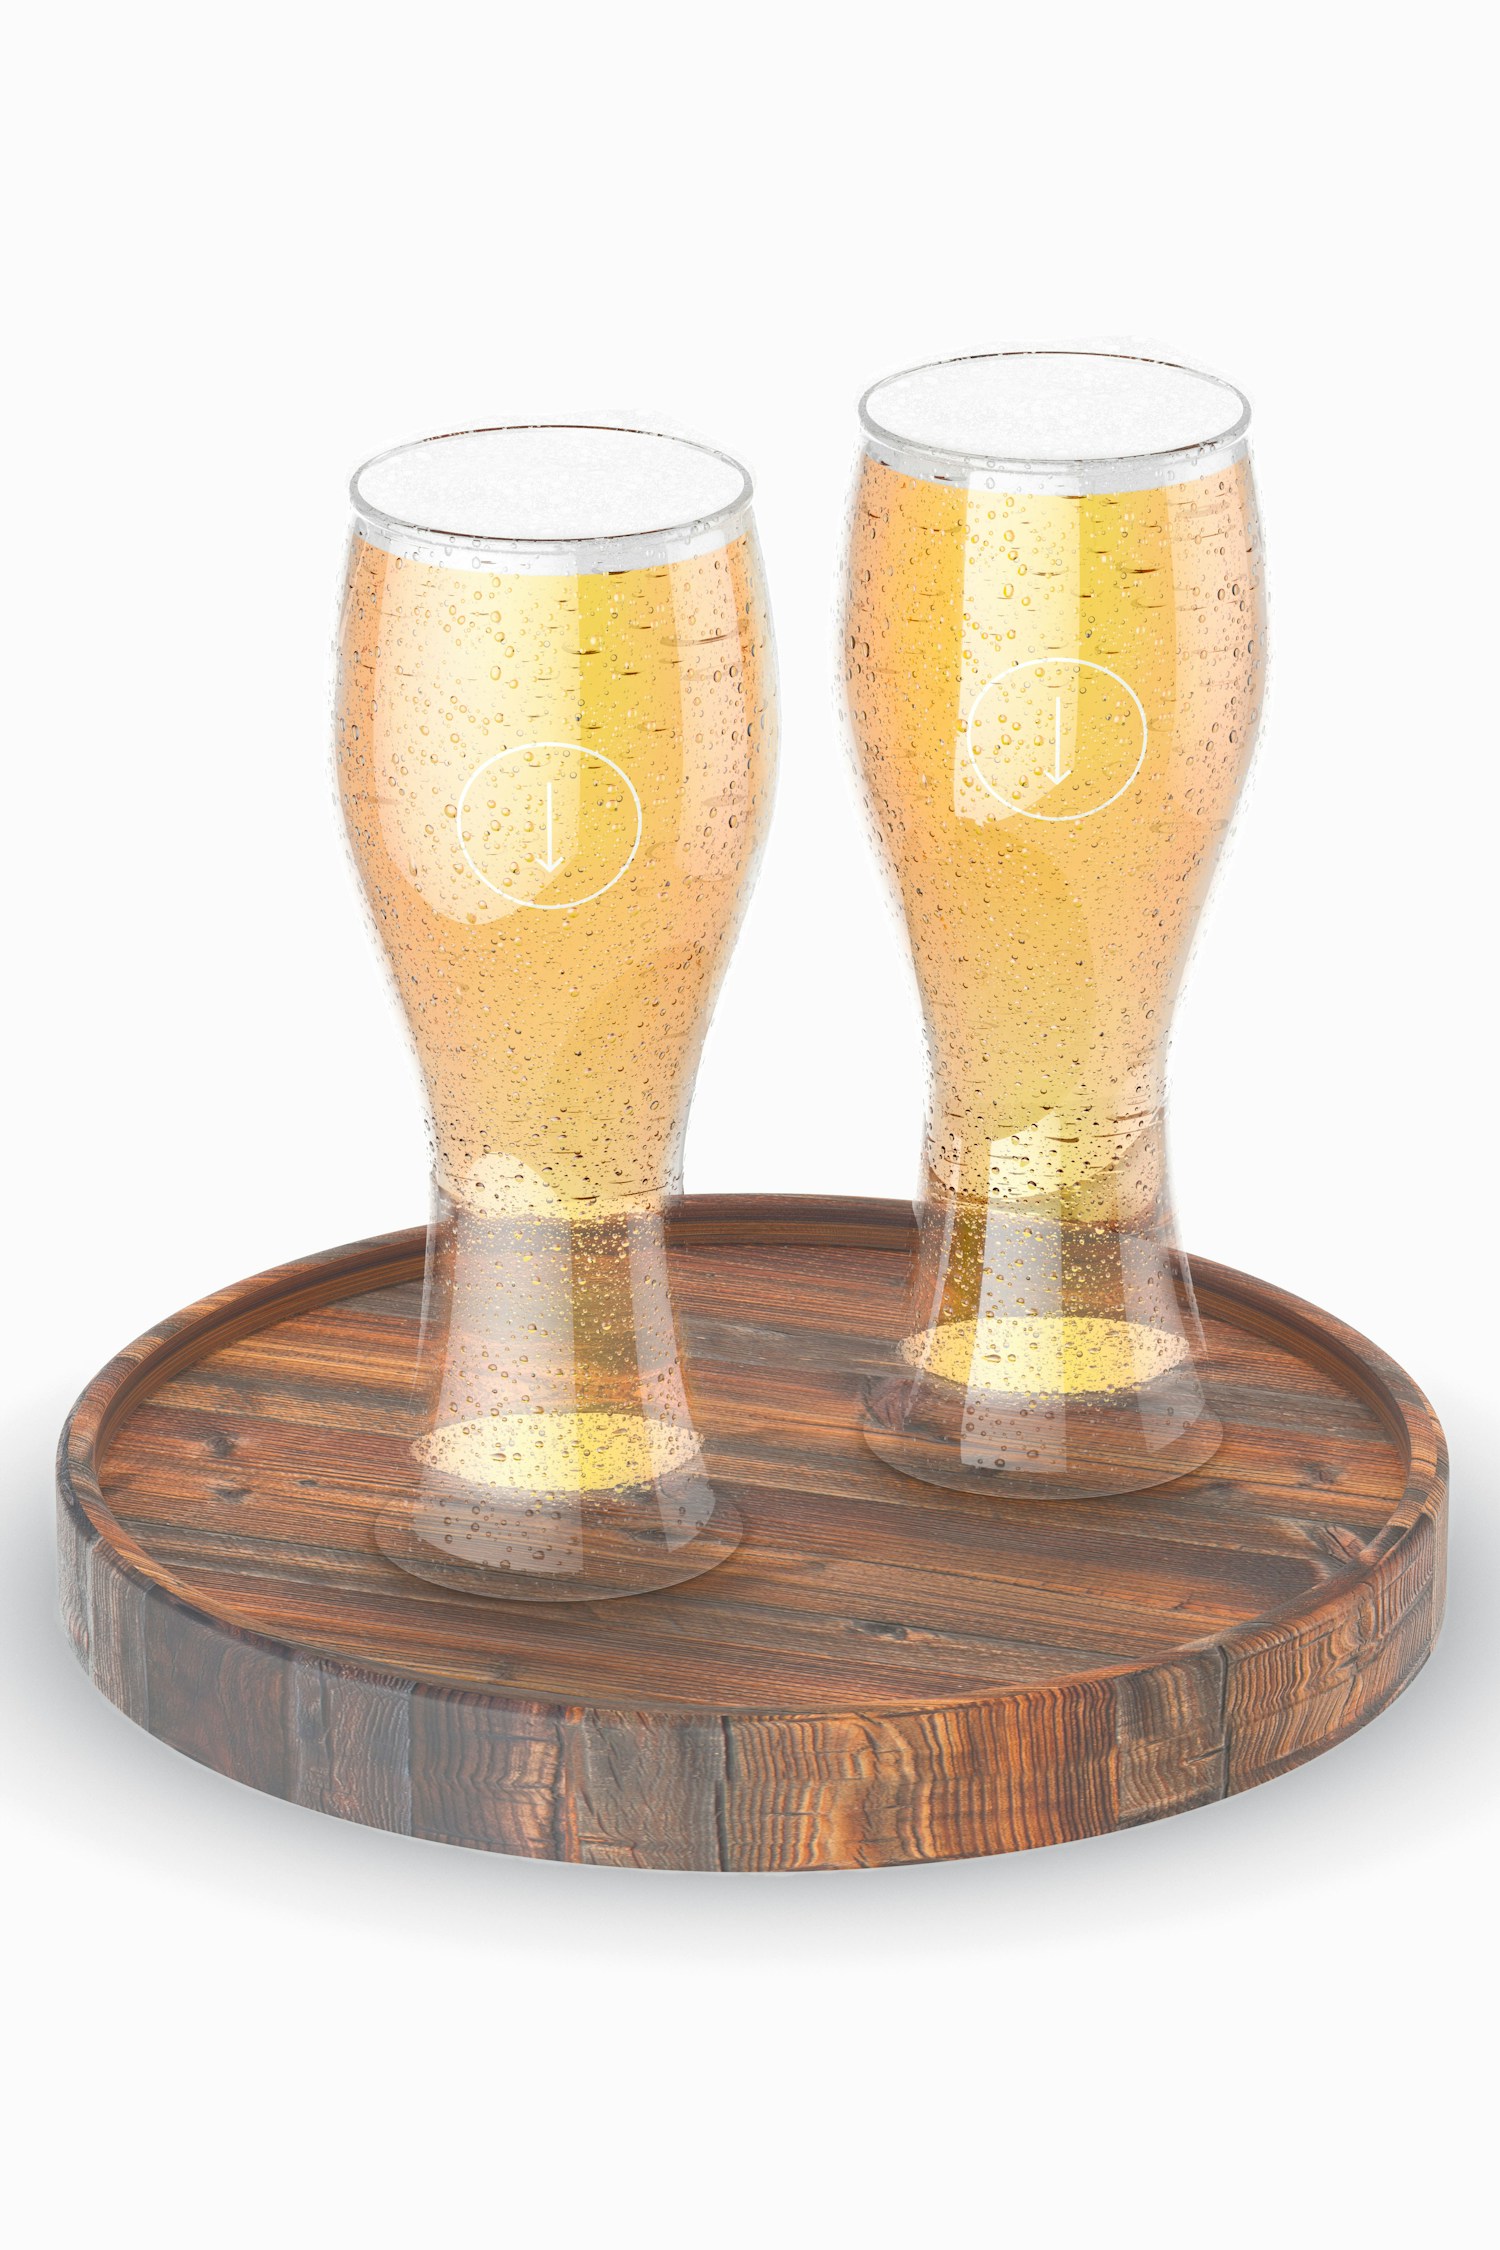 Pilsner Beer Glasses Mockup, Perspective